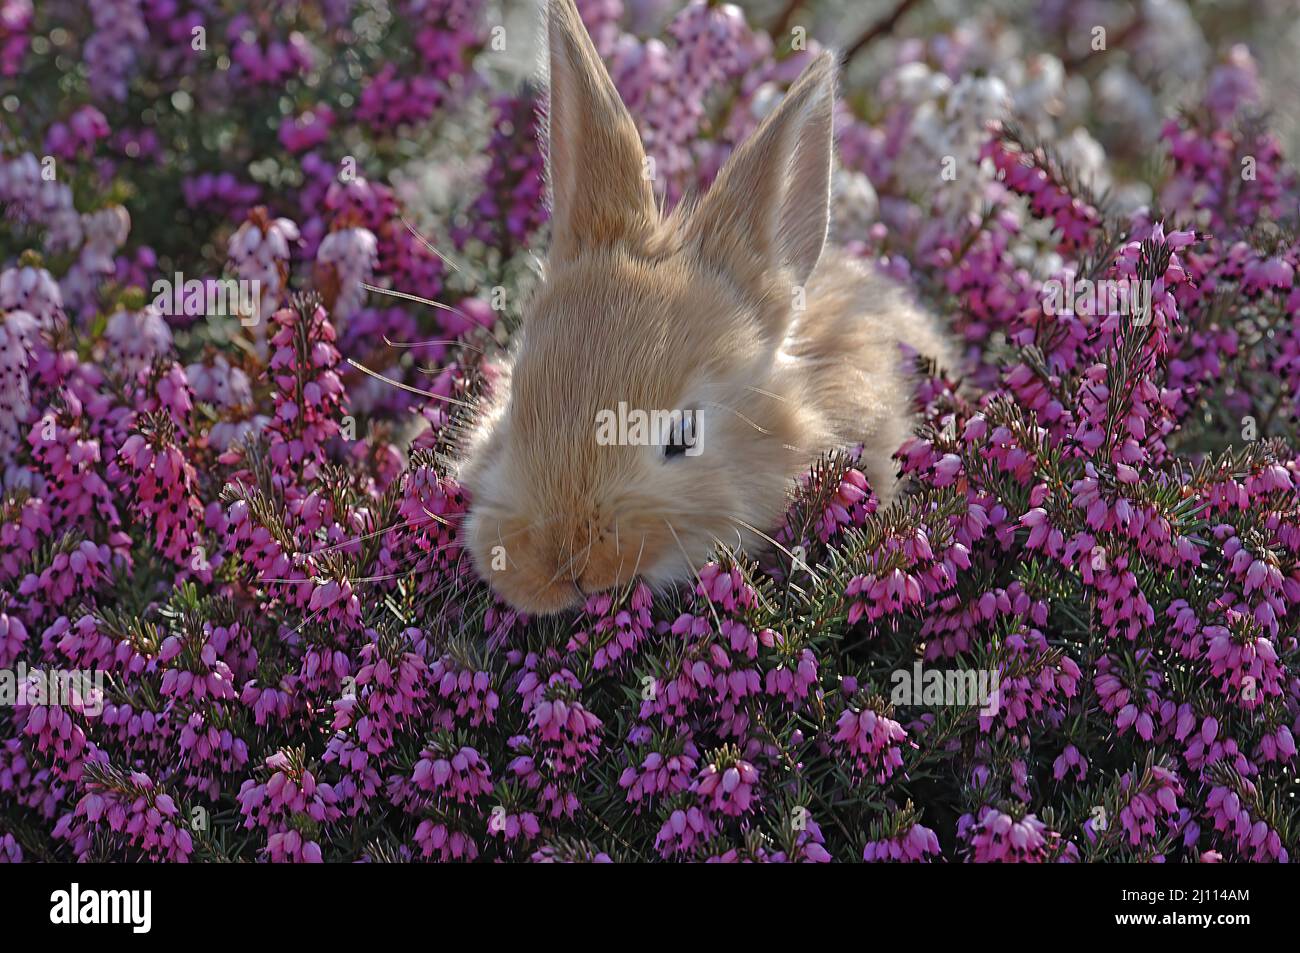 Kleiner brauner Hase versteckt sich in einer blühenden Heidekraut Pflanze, zwei Hasen Foto Stock